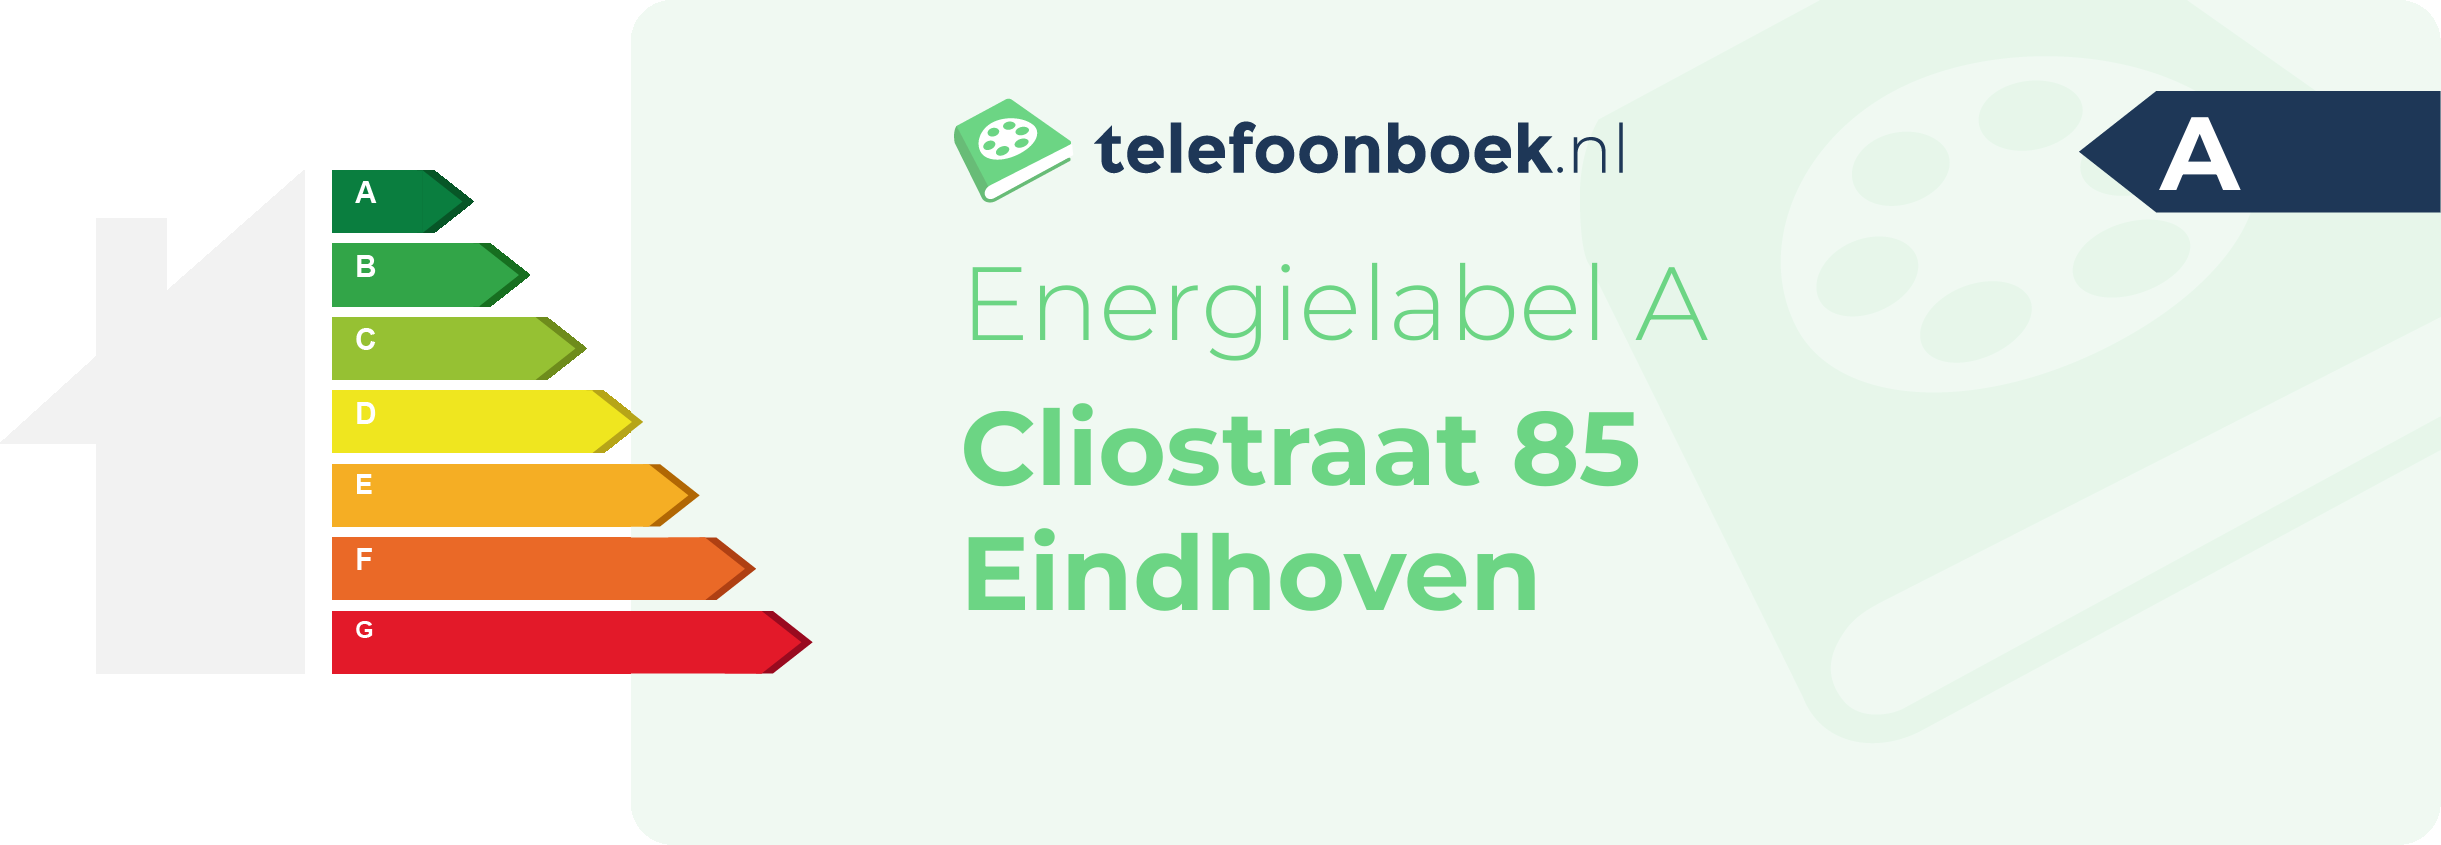 Energielabel Cliostraat 85 Eindhoven